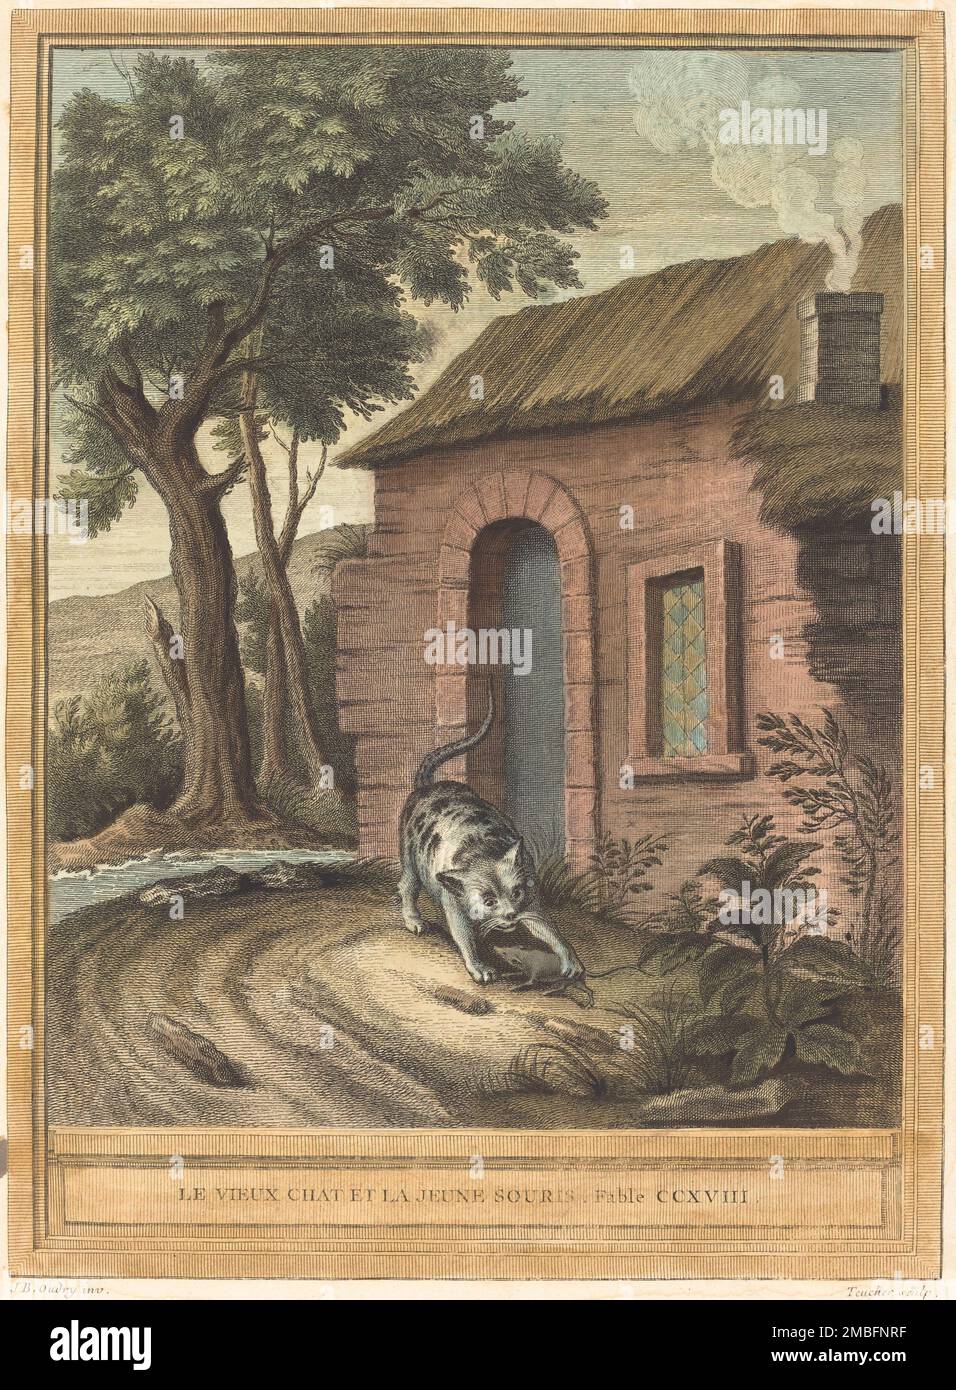 Le vieux chat et la jeune Souris (The Old Catand the Young Mouse), published 1759. Stock Photo